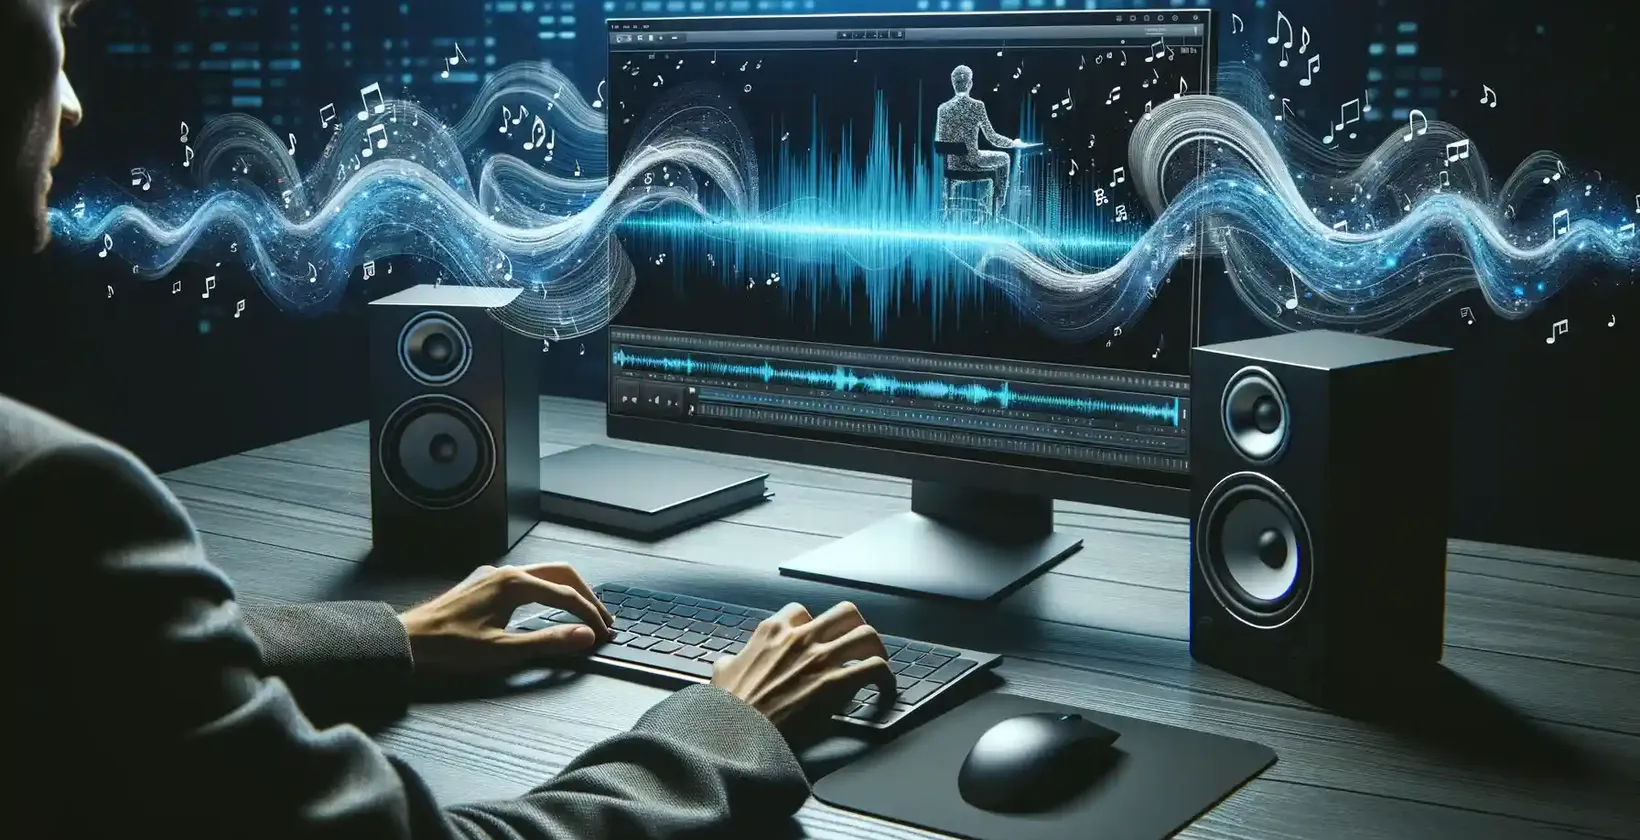 Moderní pracovní prostor osvětlený digitálním rozhraním, na kterém je muž zabraný do střihu zvuku.